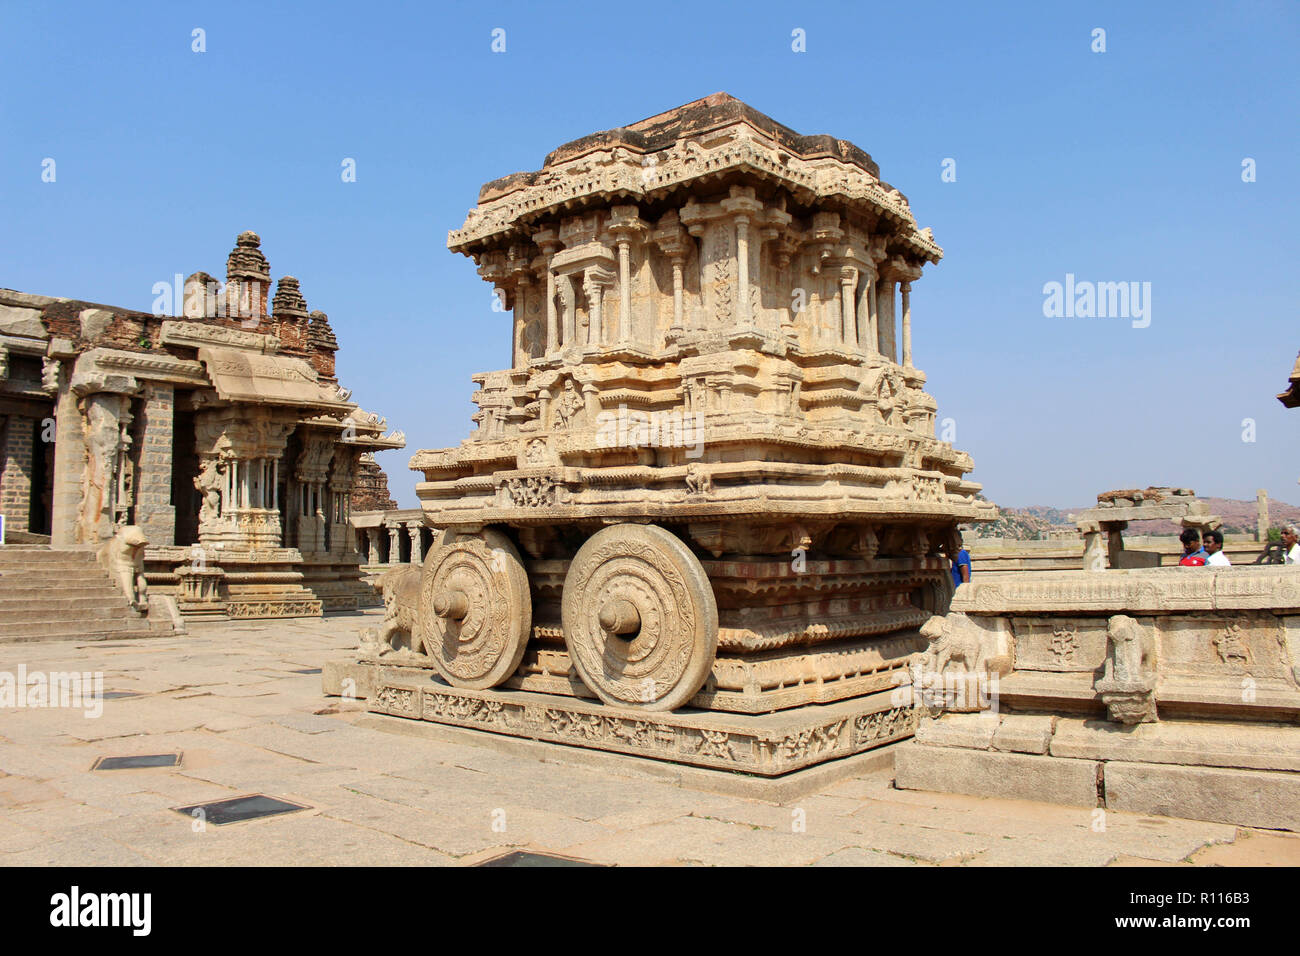 Die berühmten Vijaya Vittala Tempel und seine Wagen von Hampi. In Indien genommen, August 2018. Stockfoto